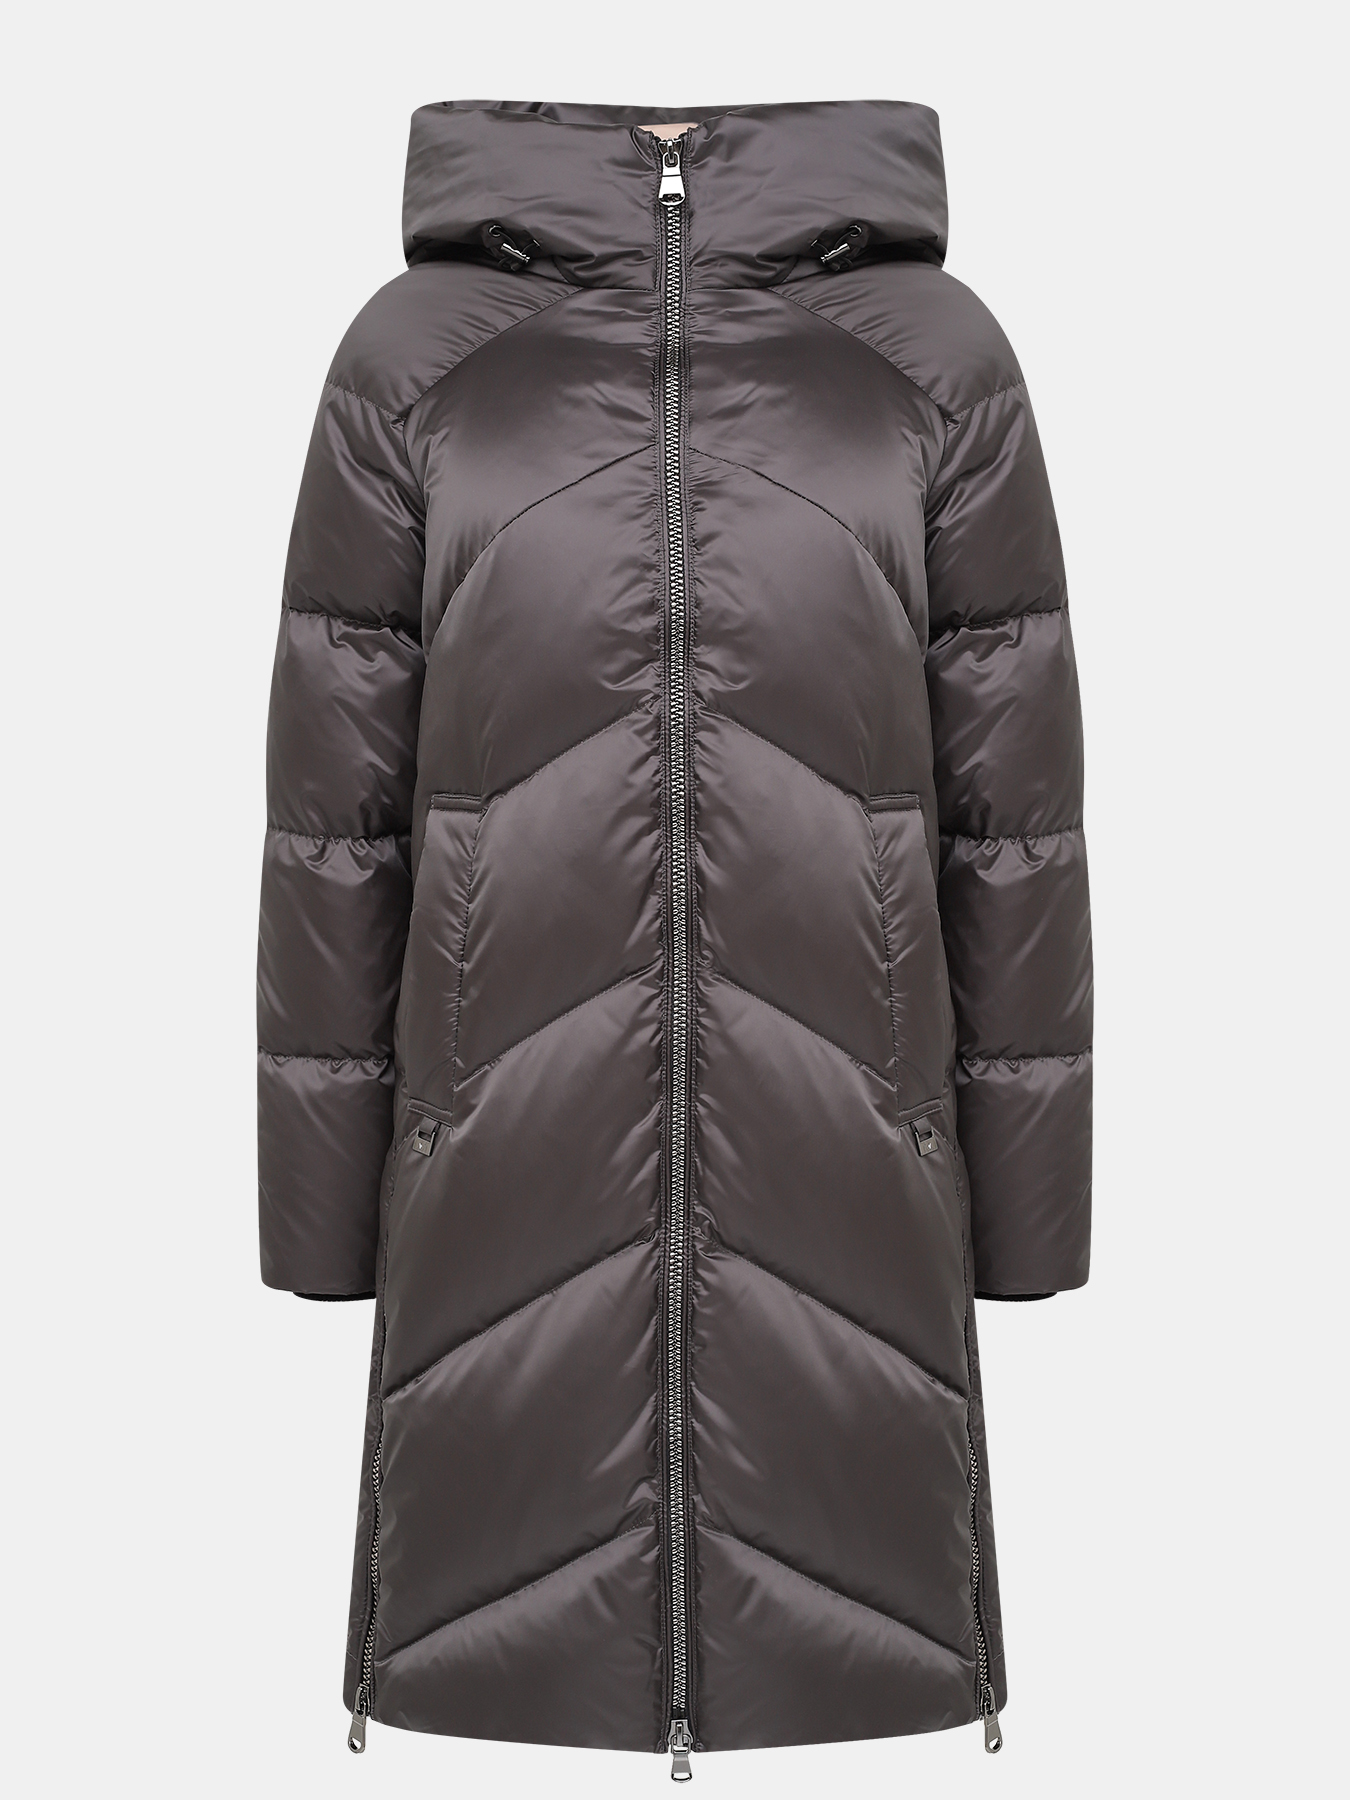 Пальто зимнее AVI 433557-020, цвет серый, размер 44